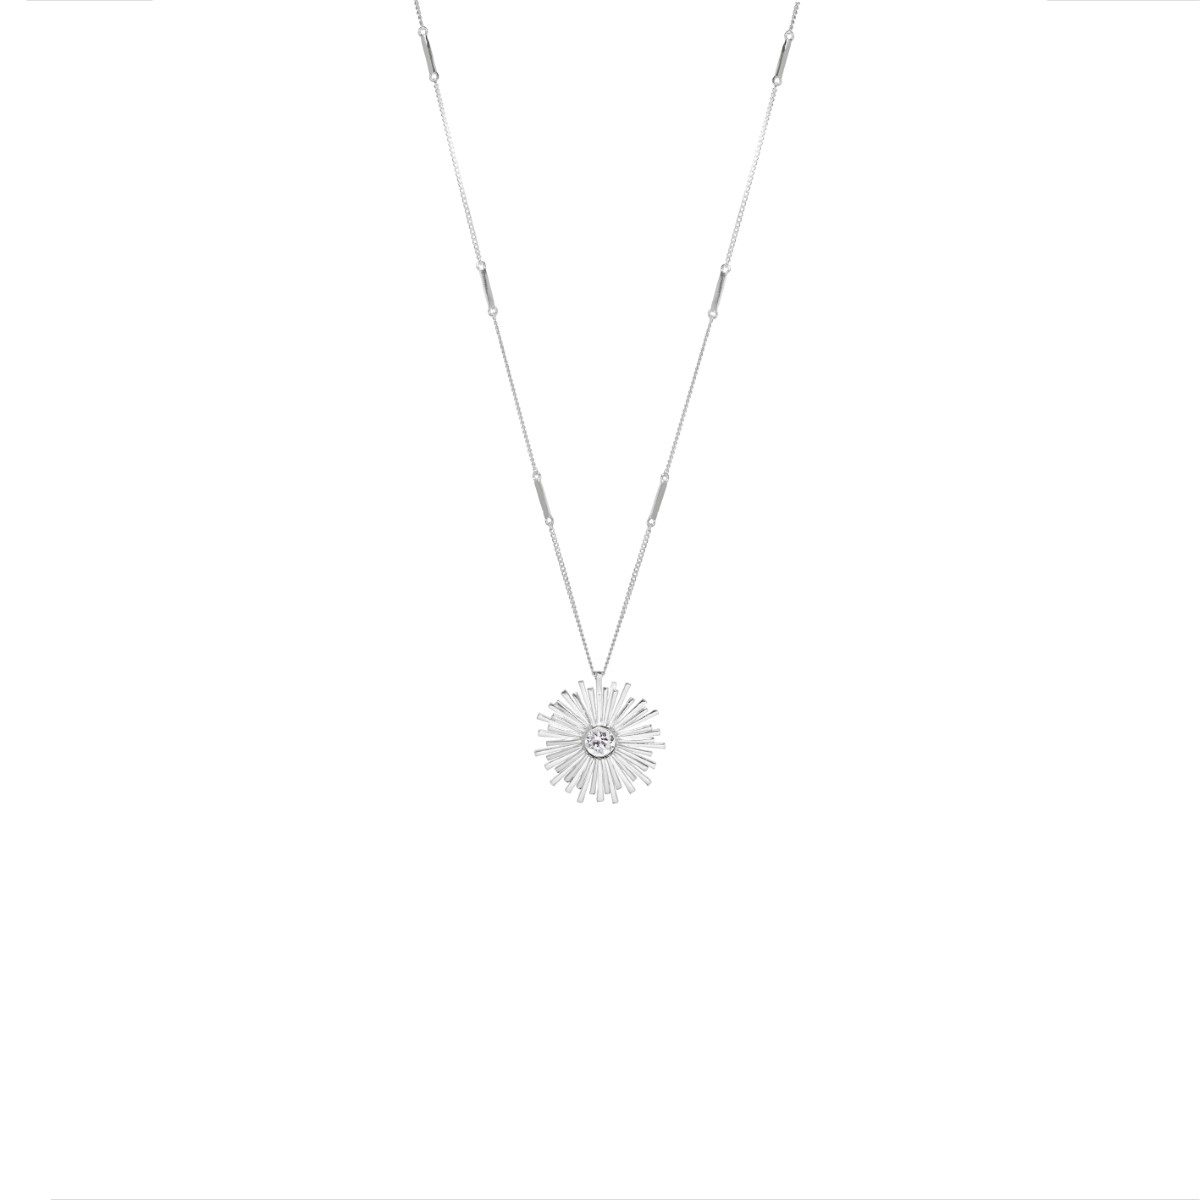 Annie Haak Orbit Silver Necklace - Crystal